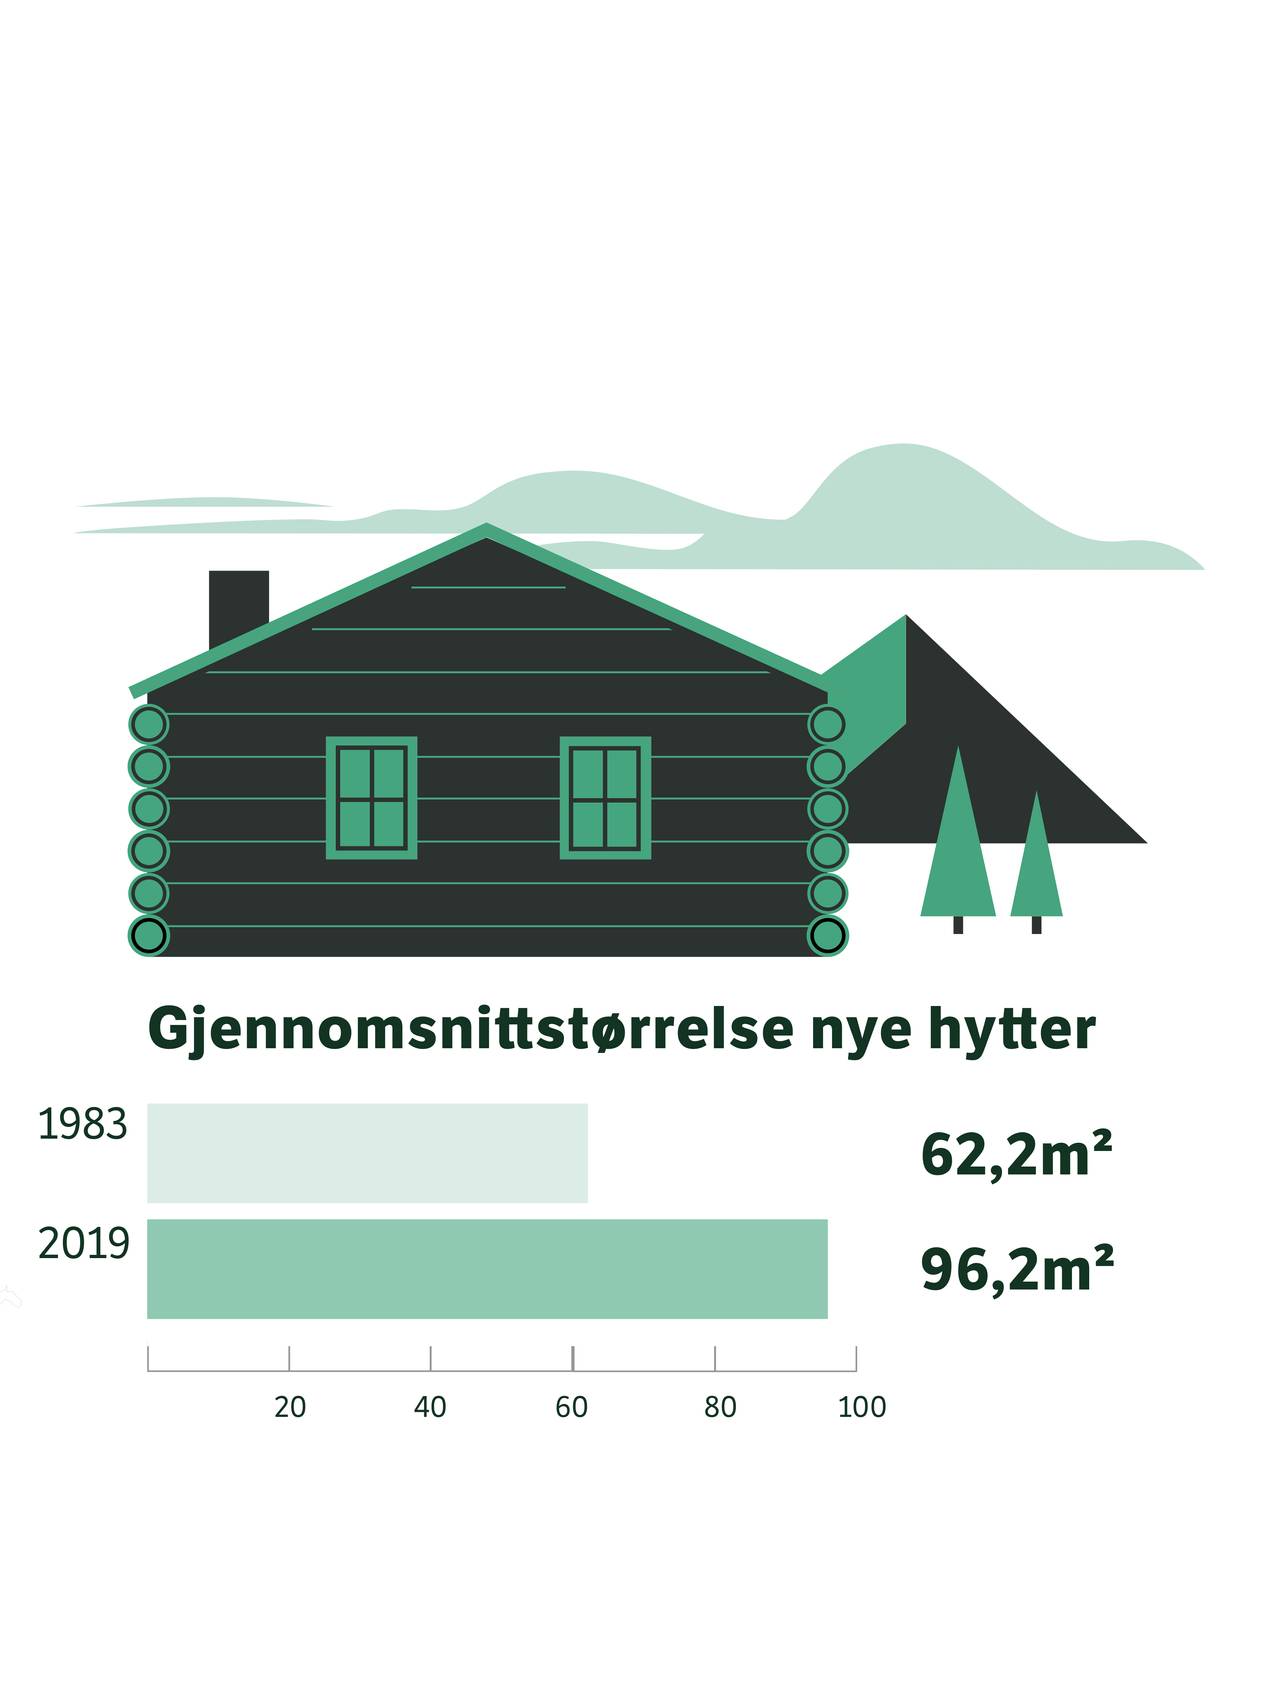 Graf over gjennomsnitt kvm nye hytter (96,2 kvm i 2019)